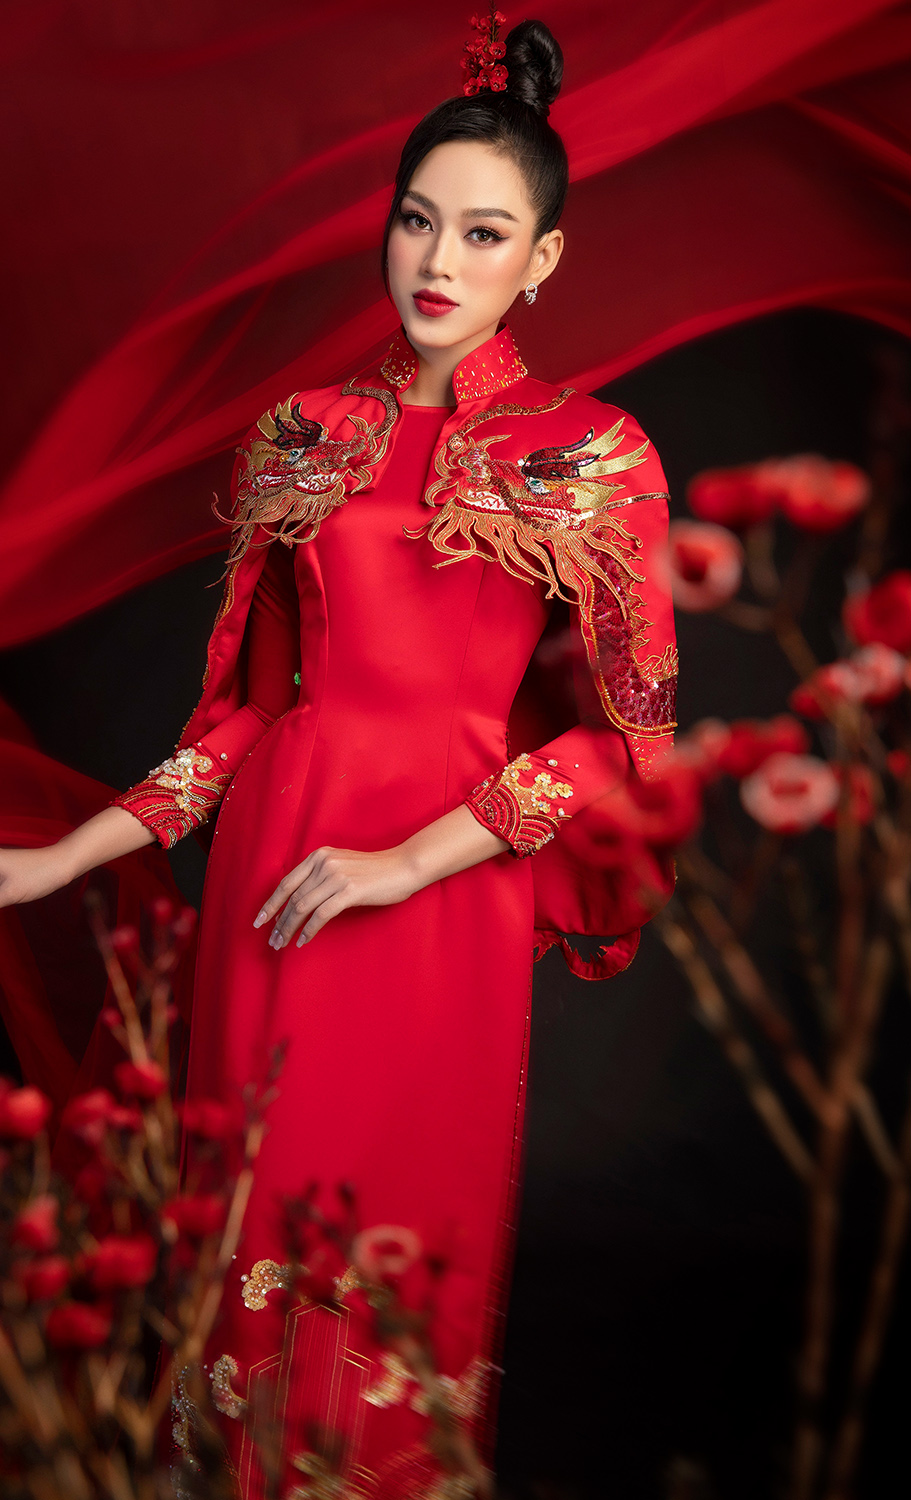 Hoa hậu Đỗ Hà trong mẫu áo dài đỏ rực nổi bật cùng thiết kế cầu vai cầu kỳ